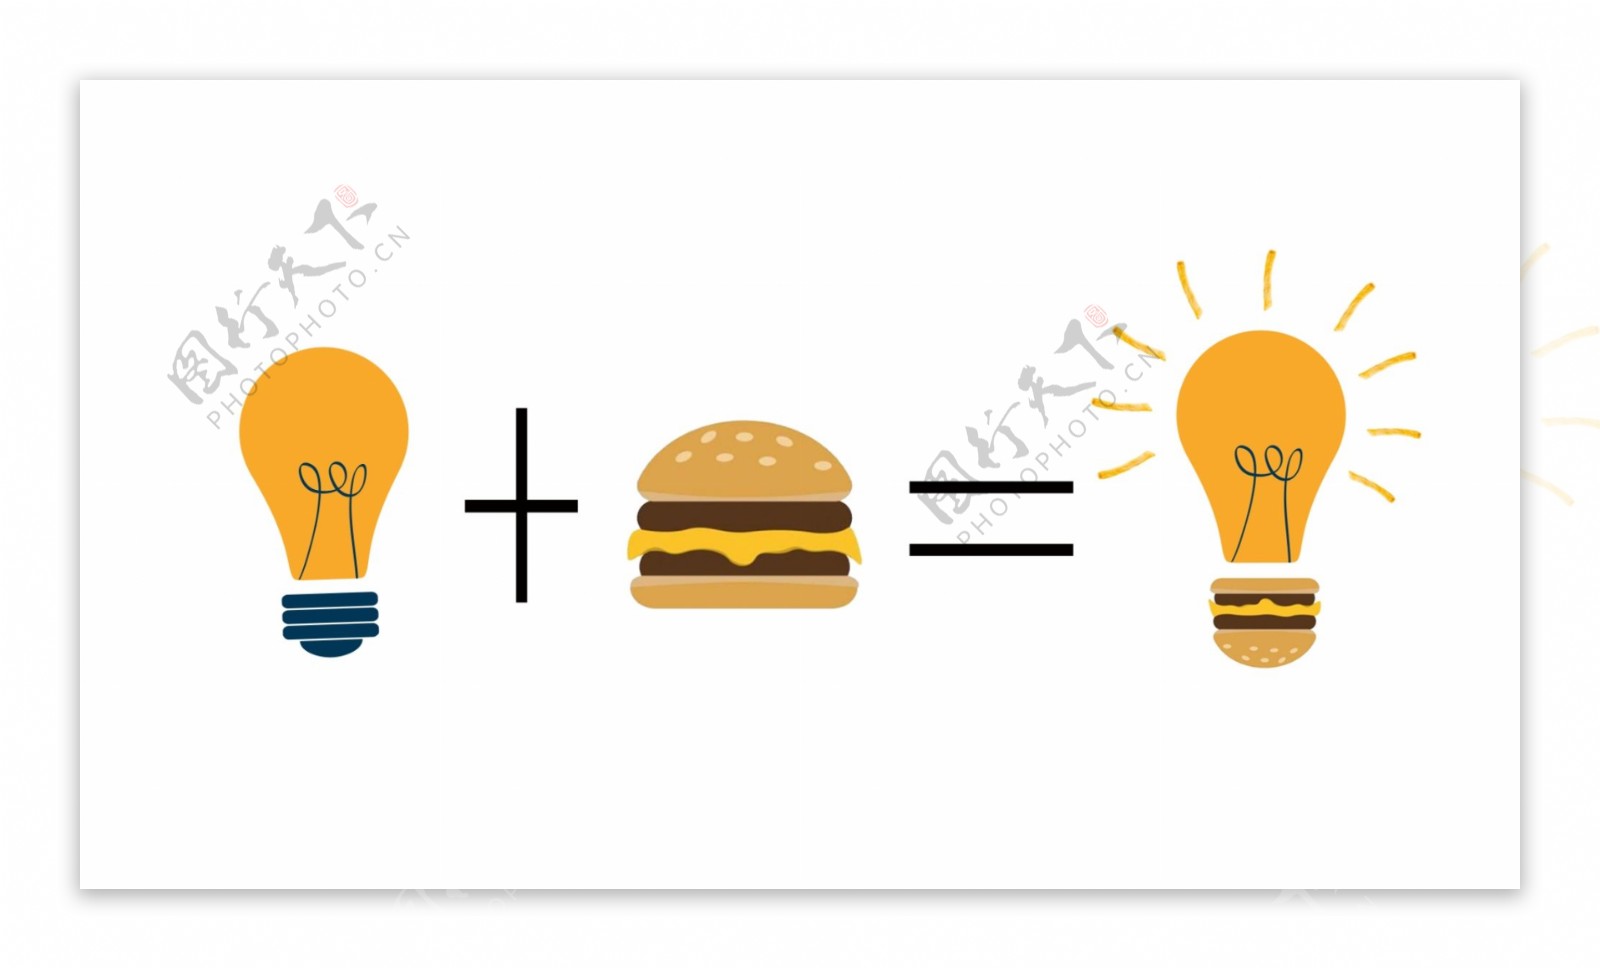 汉堡与灯泡标志素材